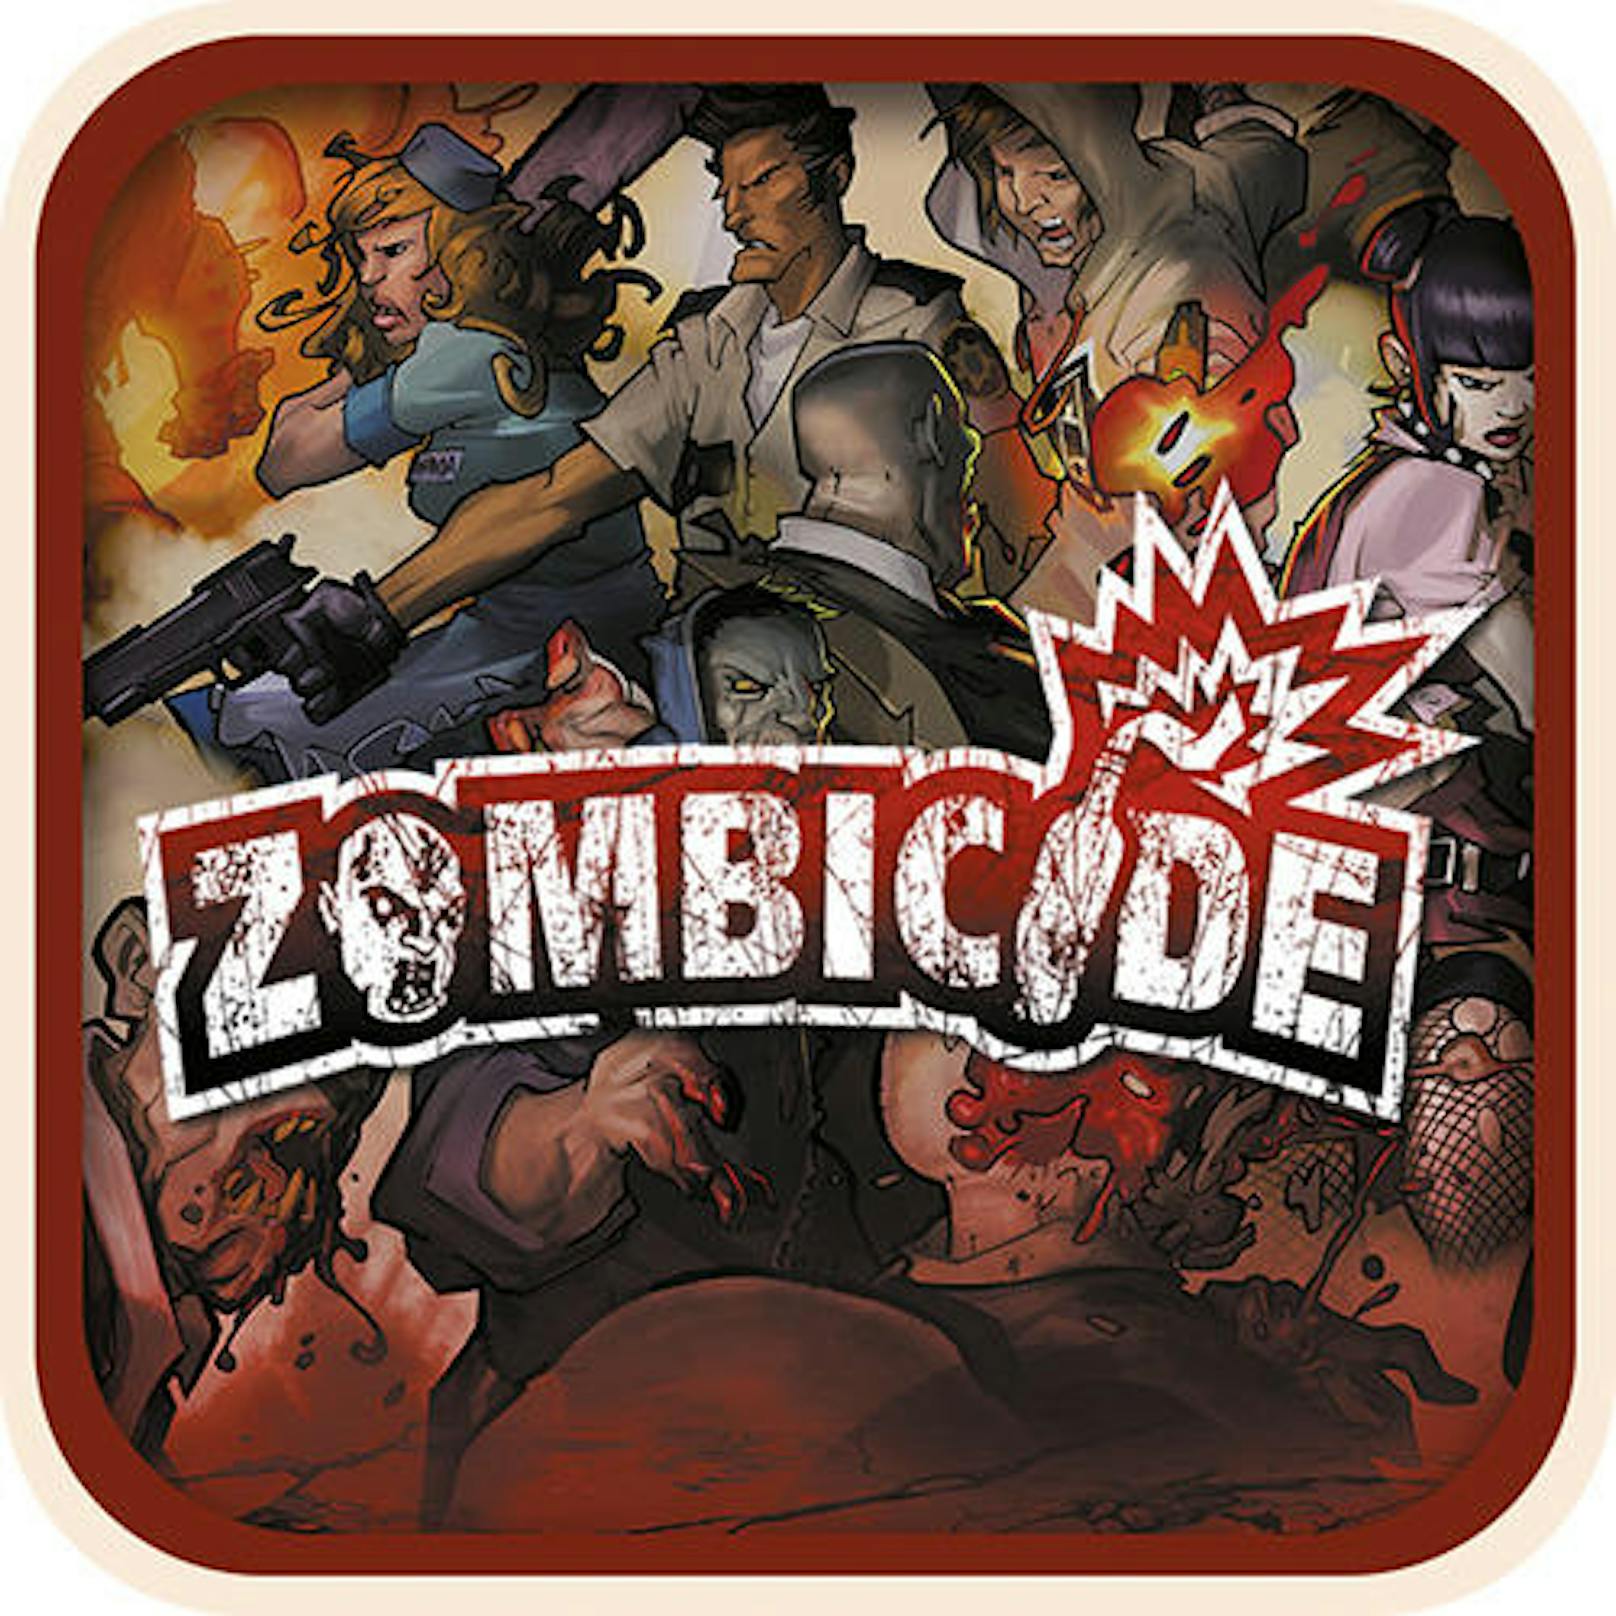 Zombicide (CMON) - Steam, iOS und Android - ein kooperatives Survival-Spiel, bei dem die Spieler Waffen finden, Fähigkeiten weiterentwickeln und diese in Teamarbeit gegen allgegenwärtige Zombies einsetzen müssen.